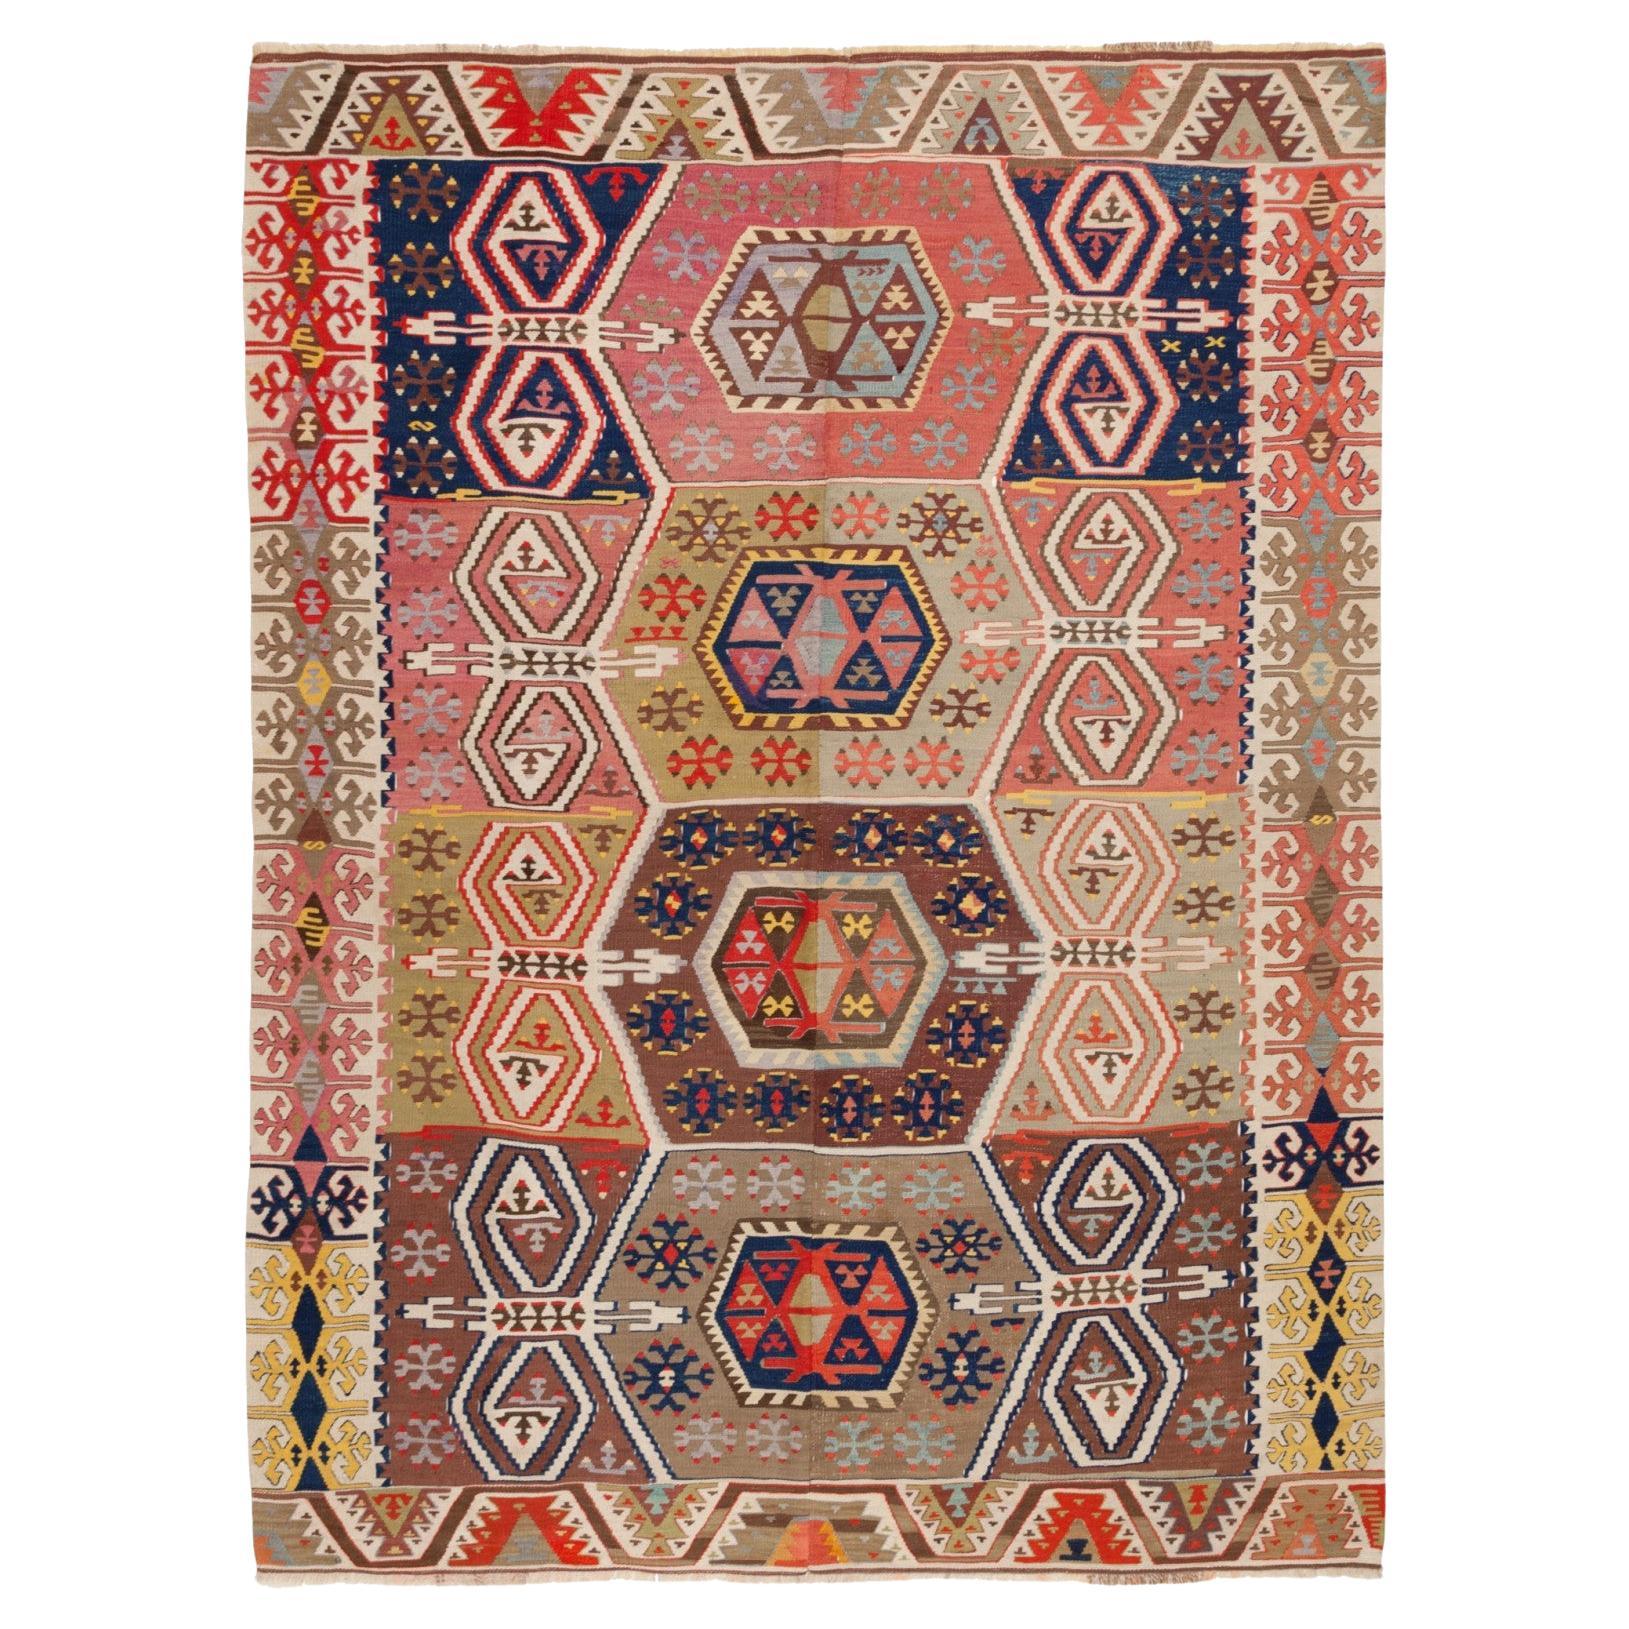 Ancien tapis Kilim de Konya en laine de Turquie centrale d'Anatolie